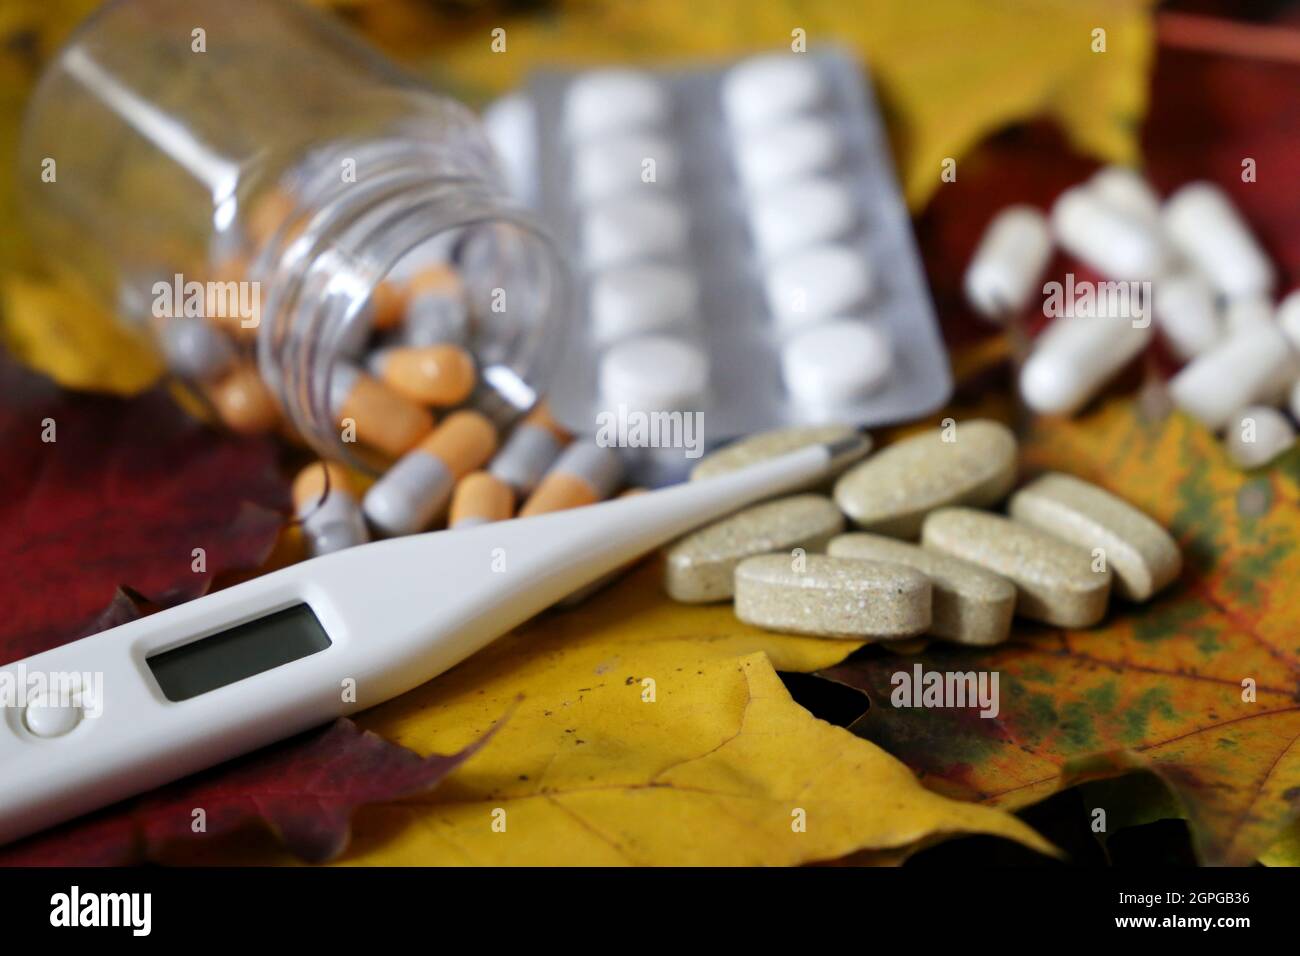 Pilules et thermomètre numérique sur feuilles d'érable jaunes et rouges, bouteille de capsules et blister de comprimés. Concept d'antipyrétique, vitamines Banque D'Images